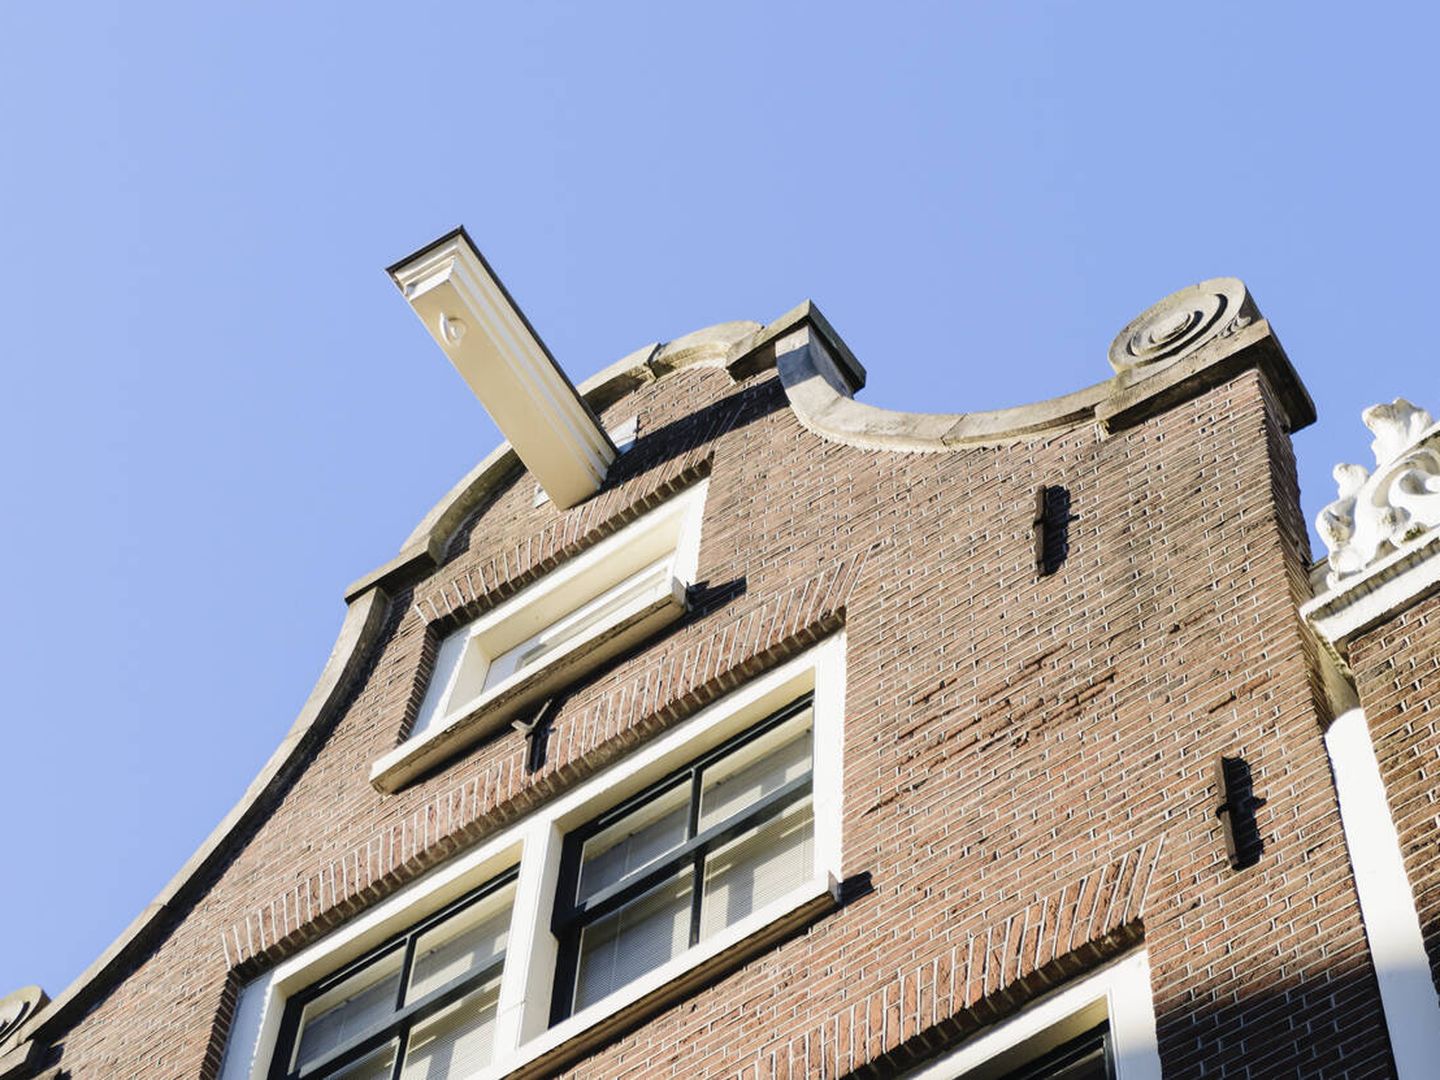 El gancho de una de las casas de Ámsterdam (iStock)